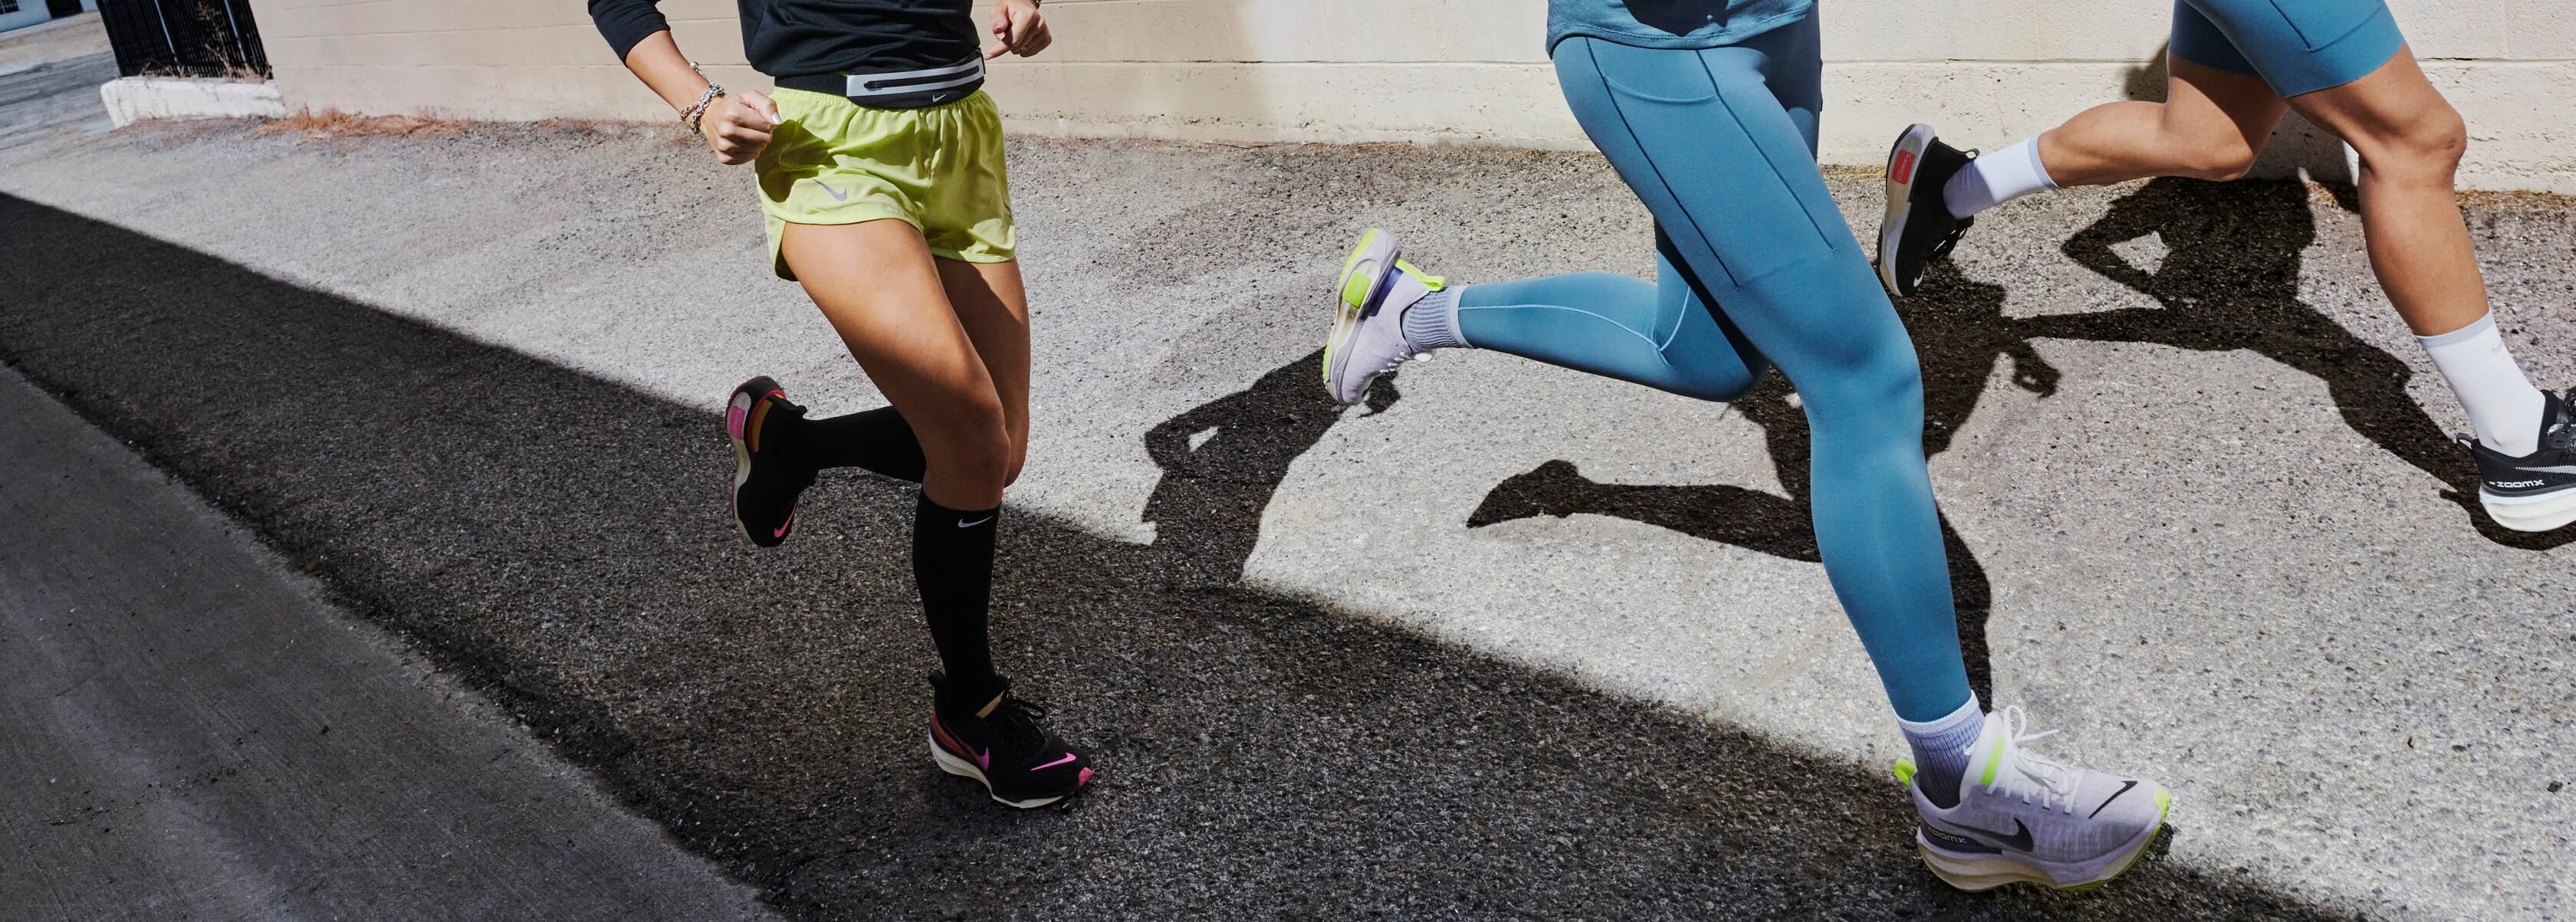 Running Gear For Women - Leggings